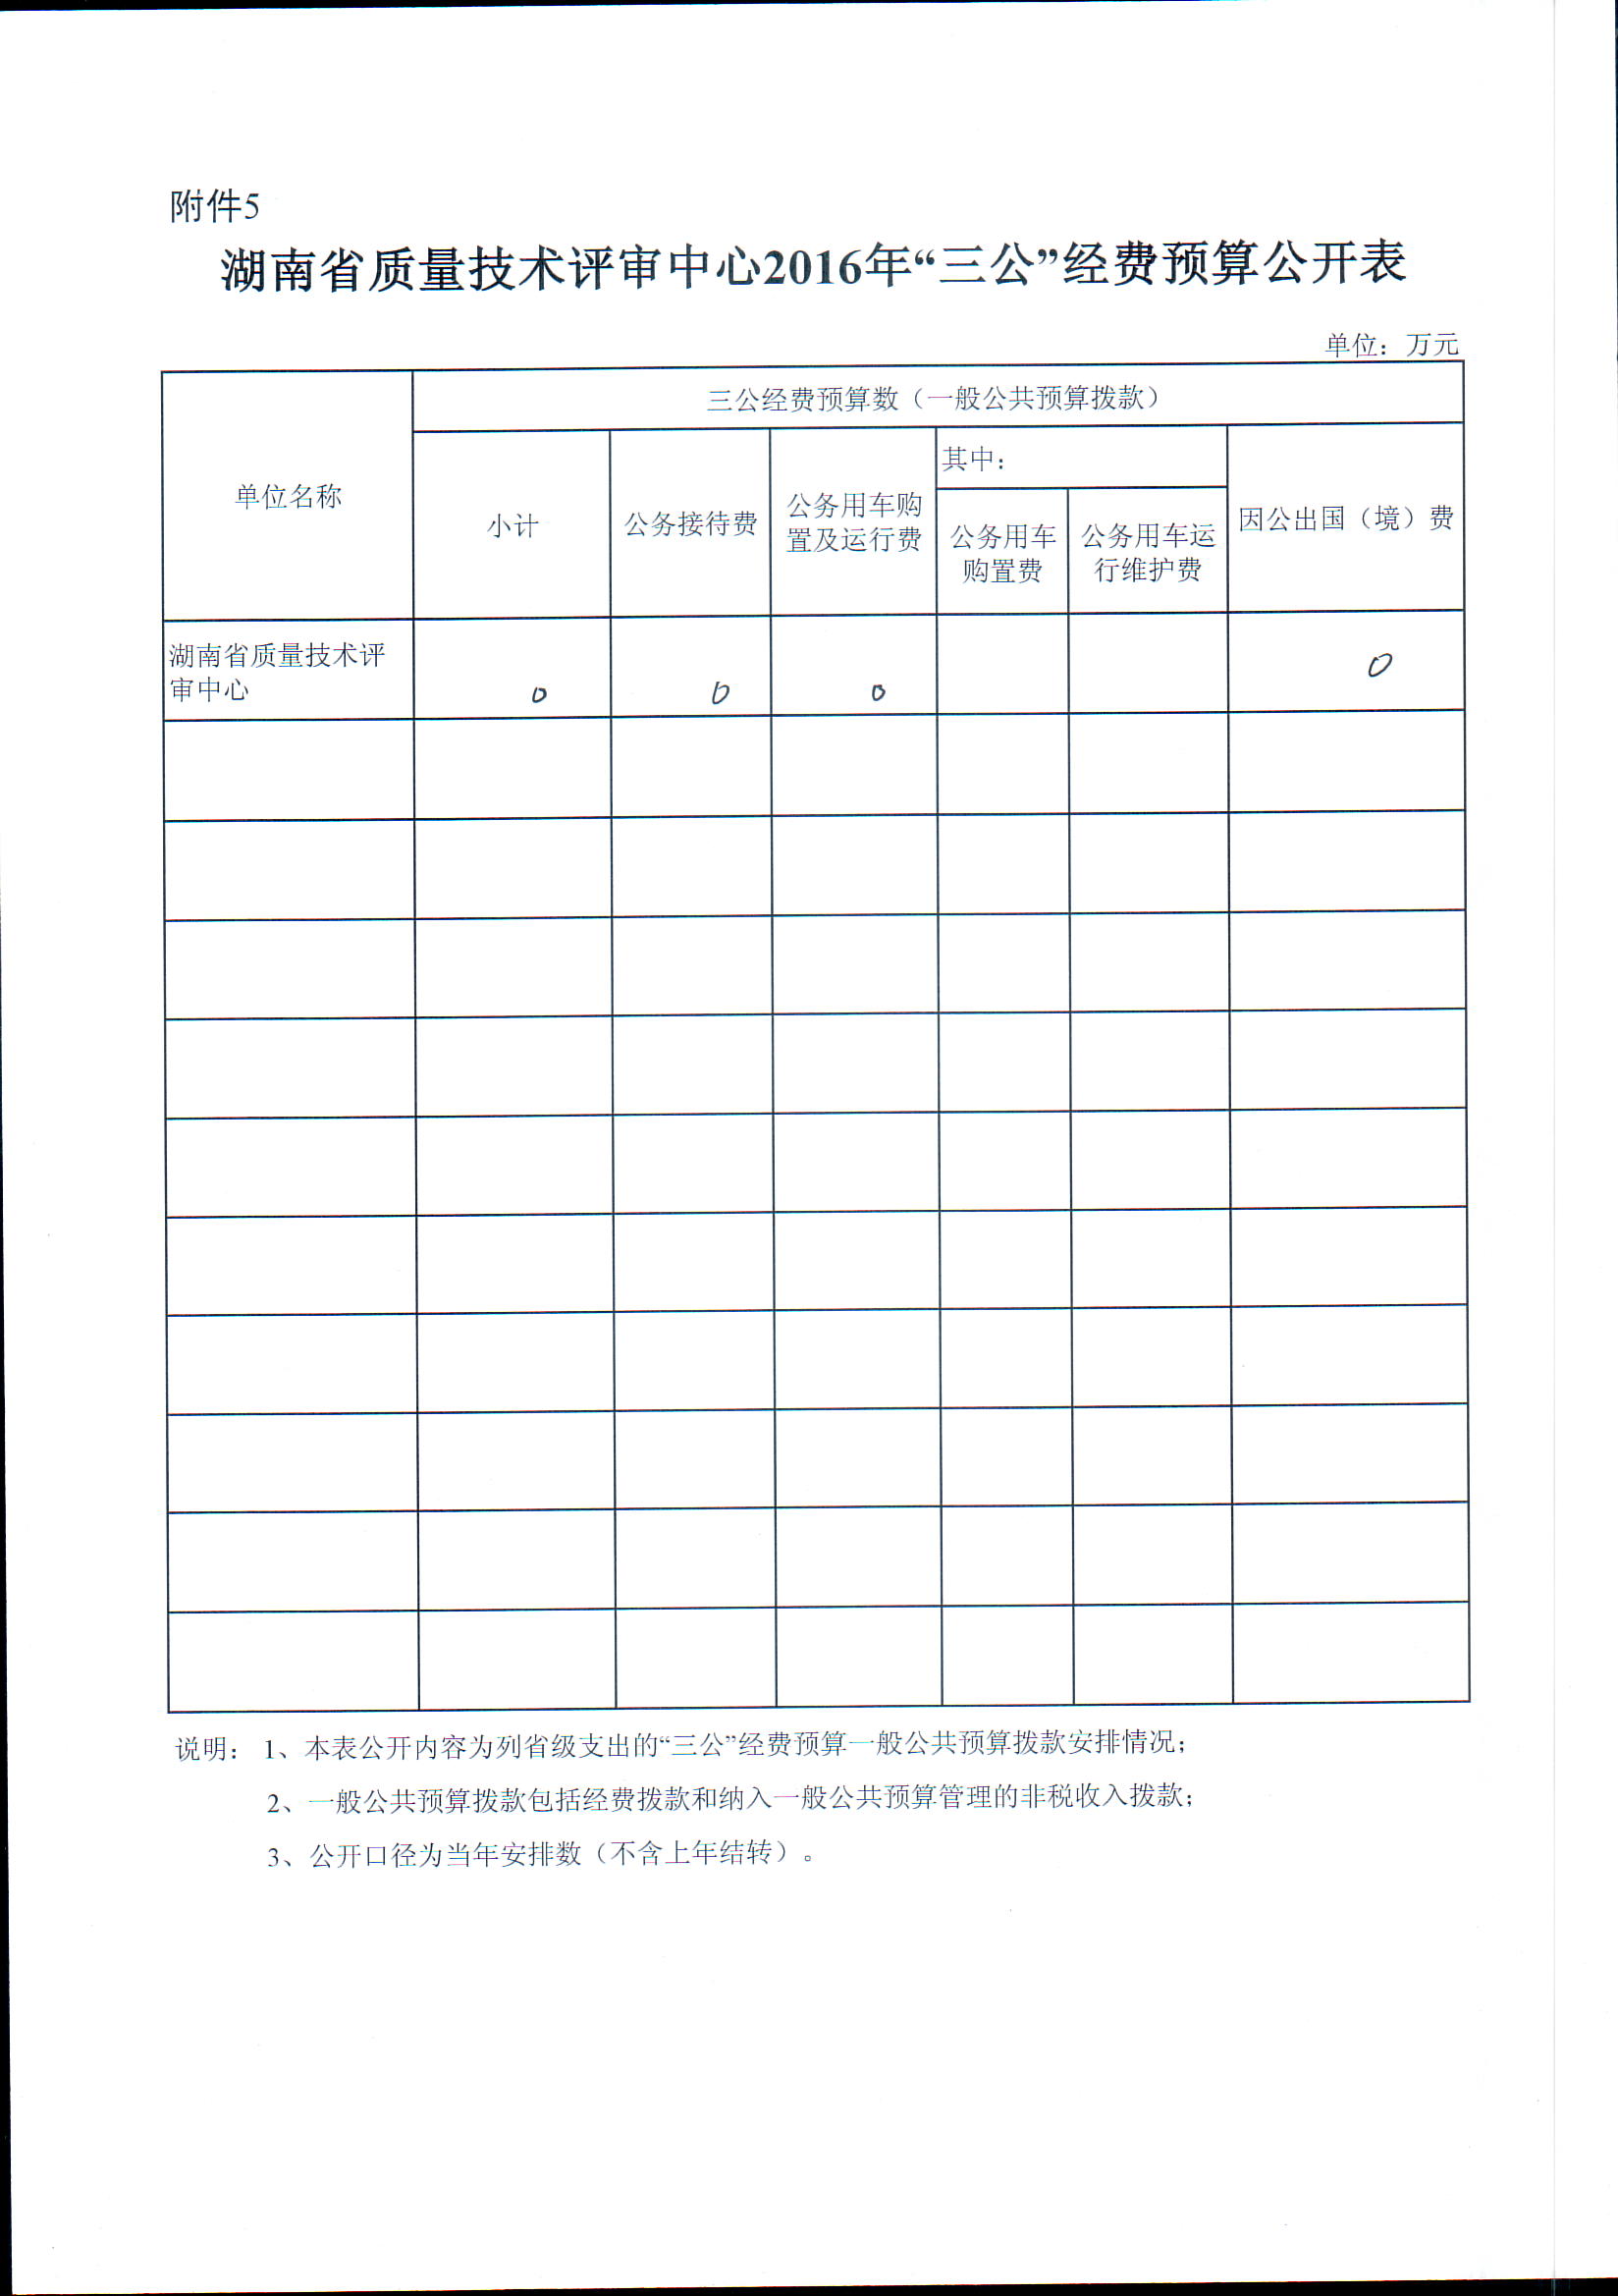 湖南省质量技术评审中心2016年度预算公示